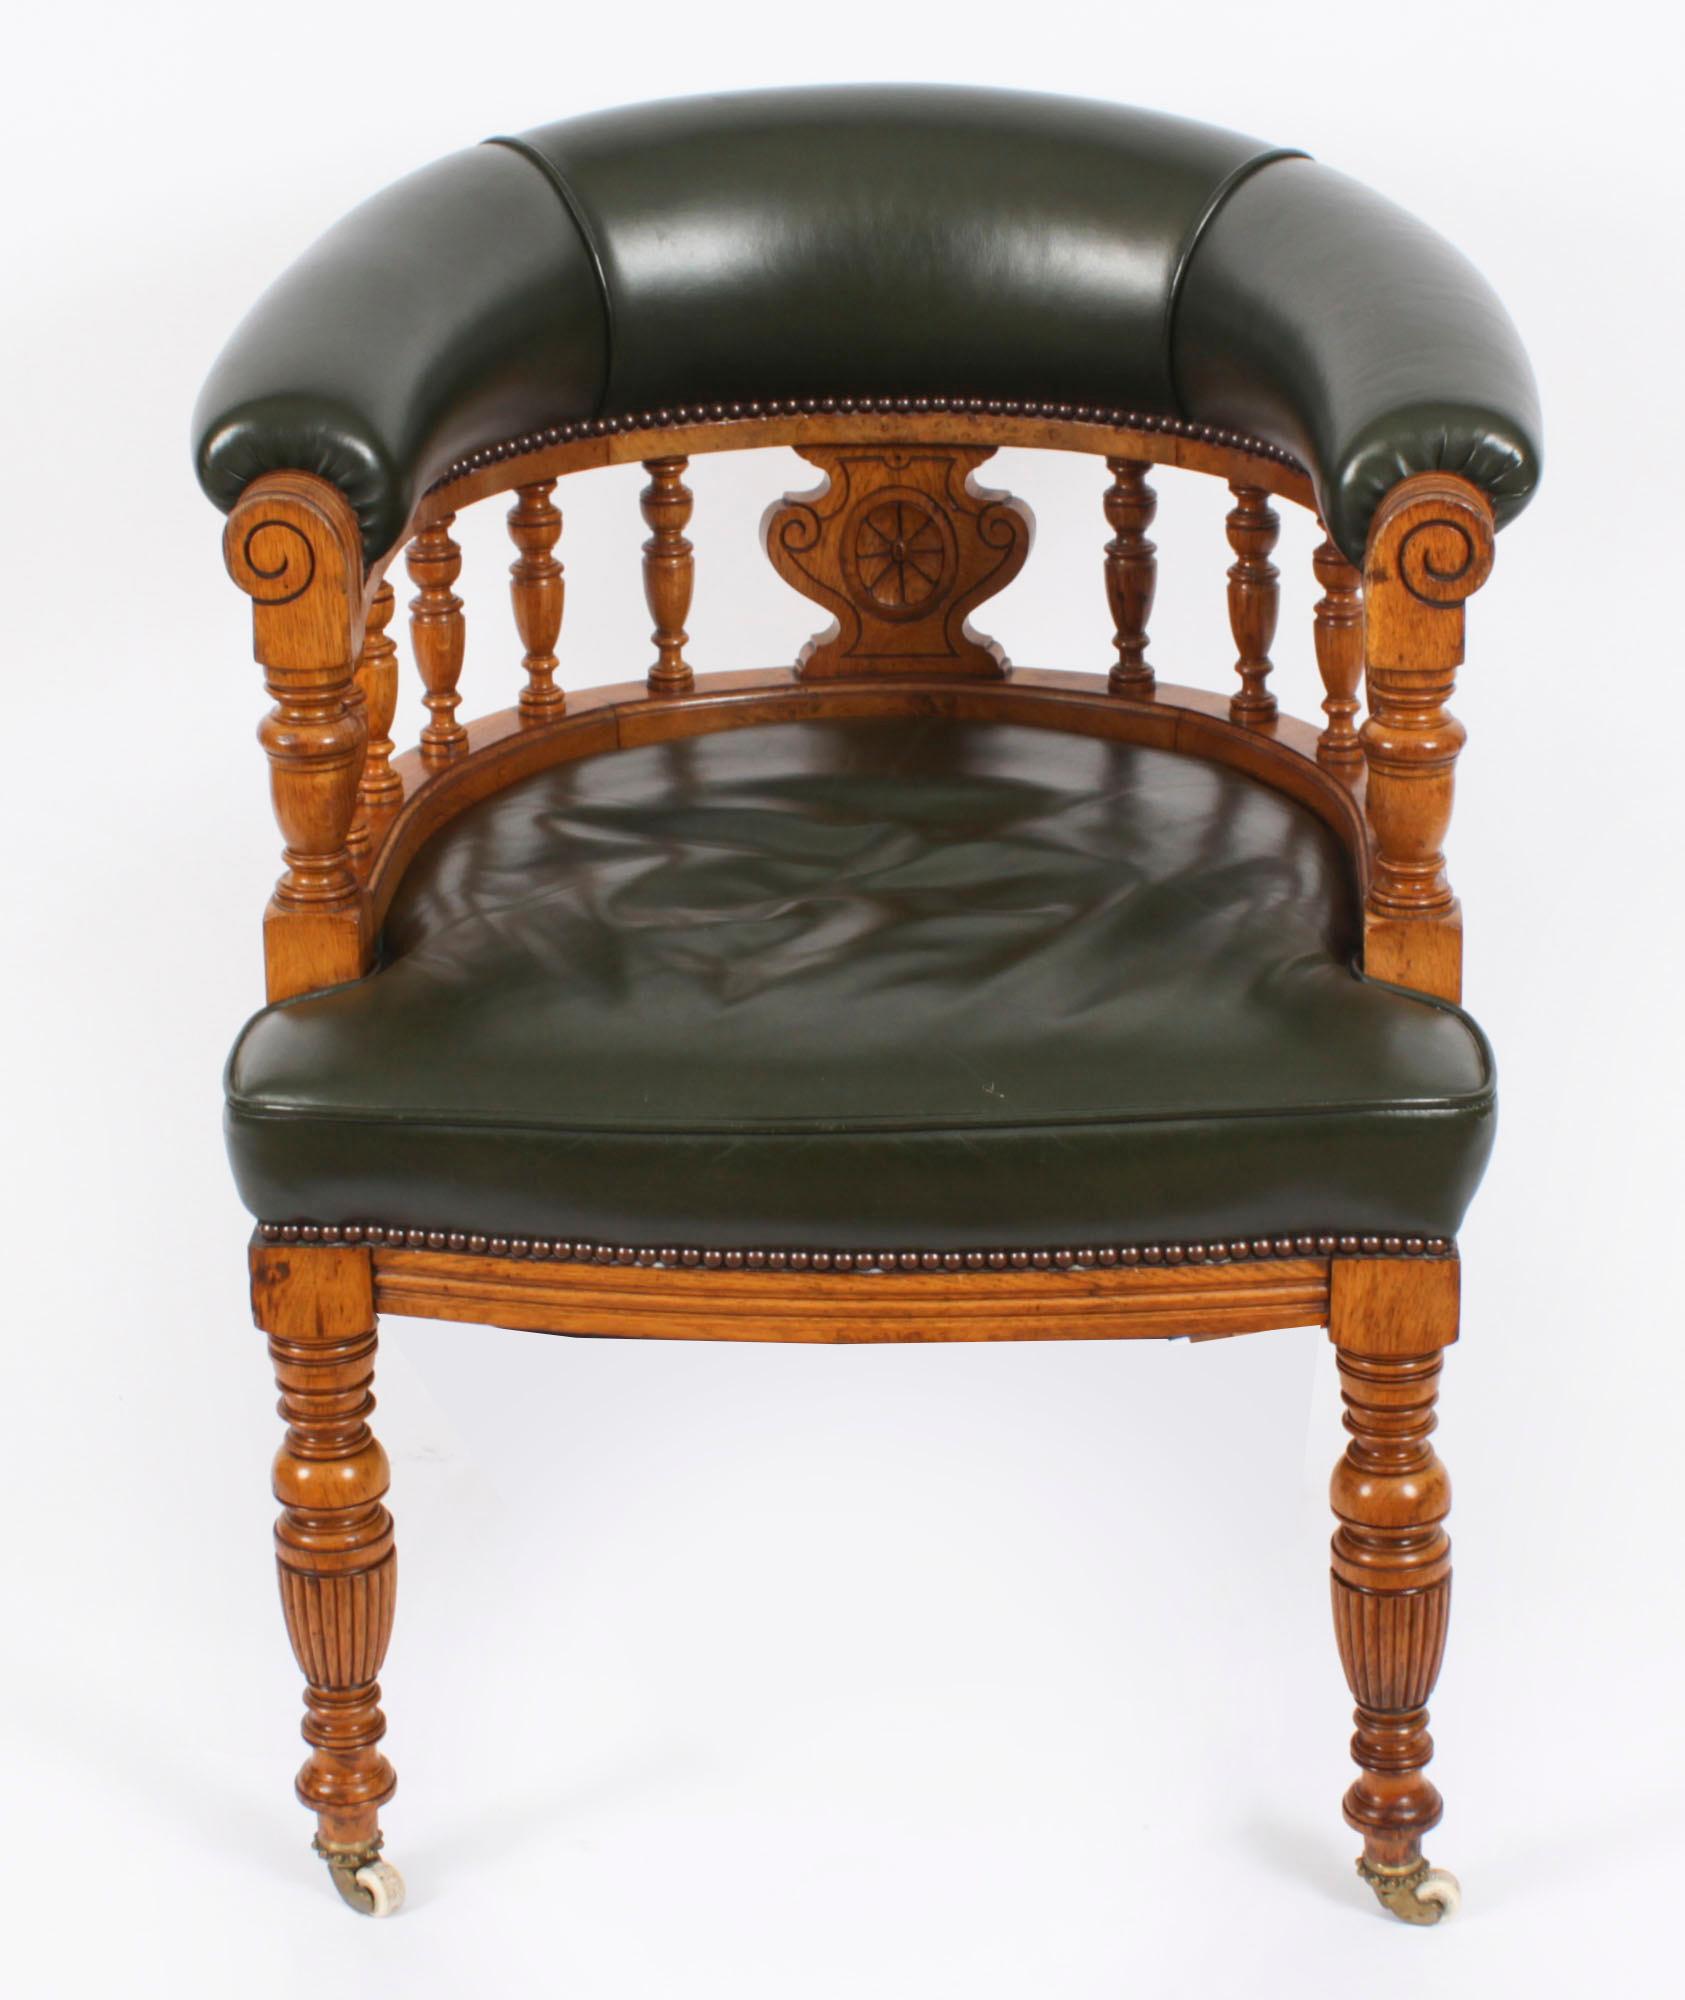 Il s'agit d'un très élégant fauteuil victorien ancien en noyer de bureau à cuve, datant d'environ 1880.

Chaise de bureau édouardienne en chêne miel et cuir vert, datant d'environ 1910.

La chaise présente un dossier incurvé avec des fuseaux en